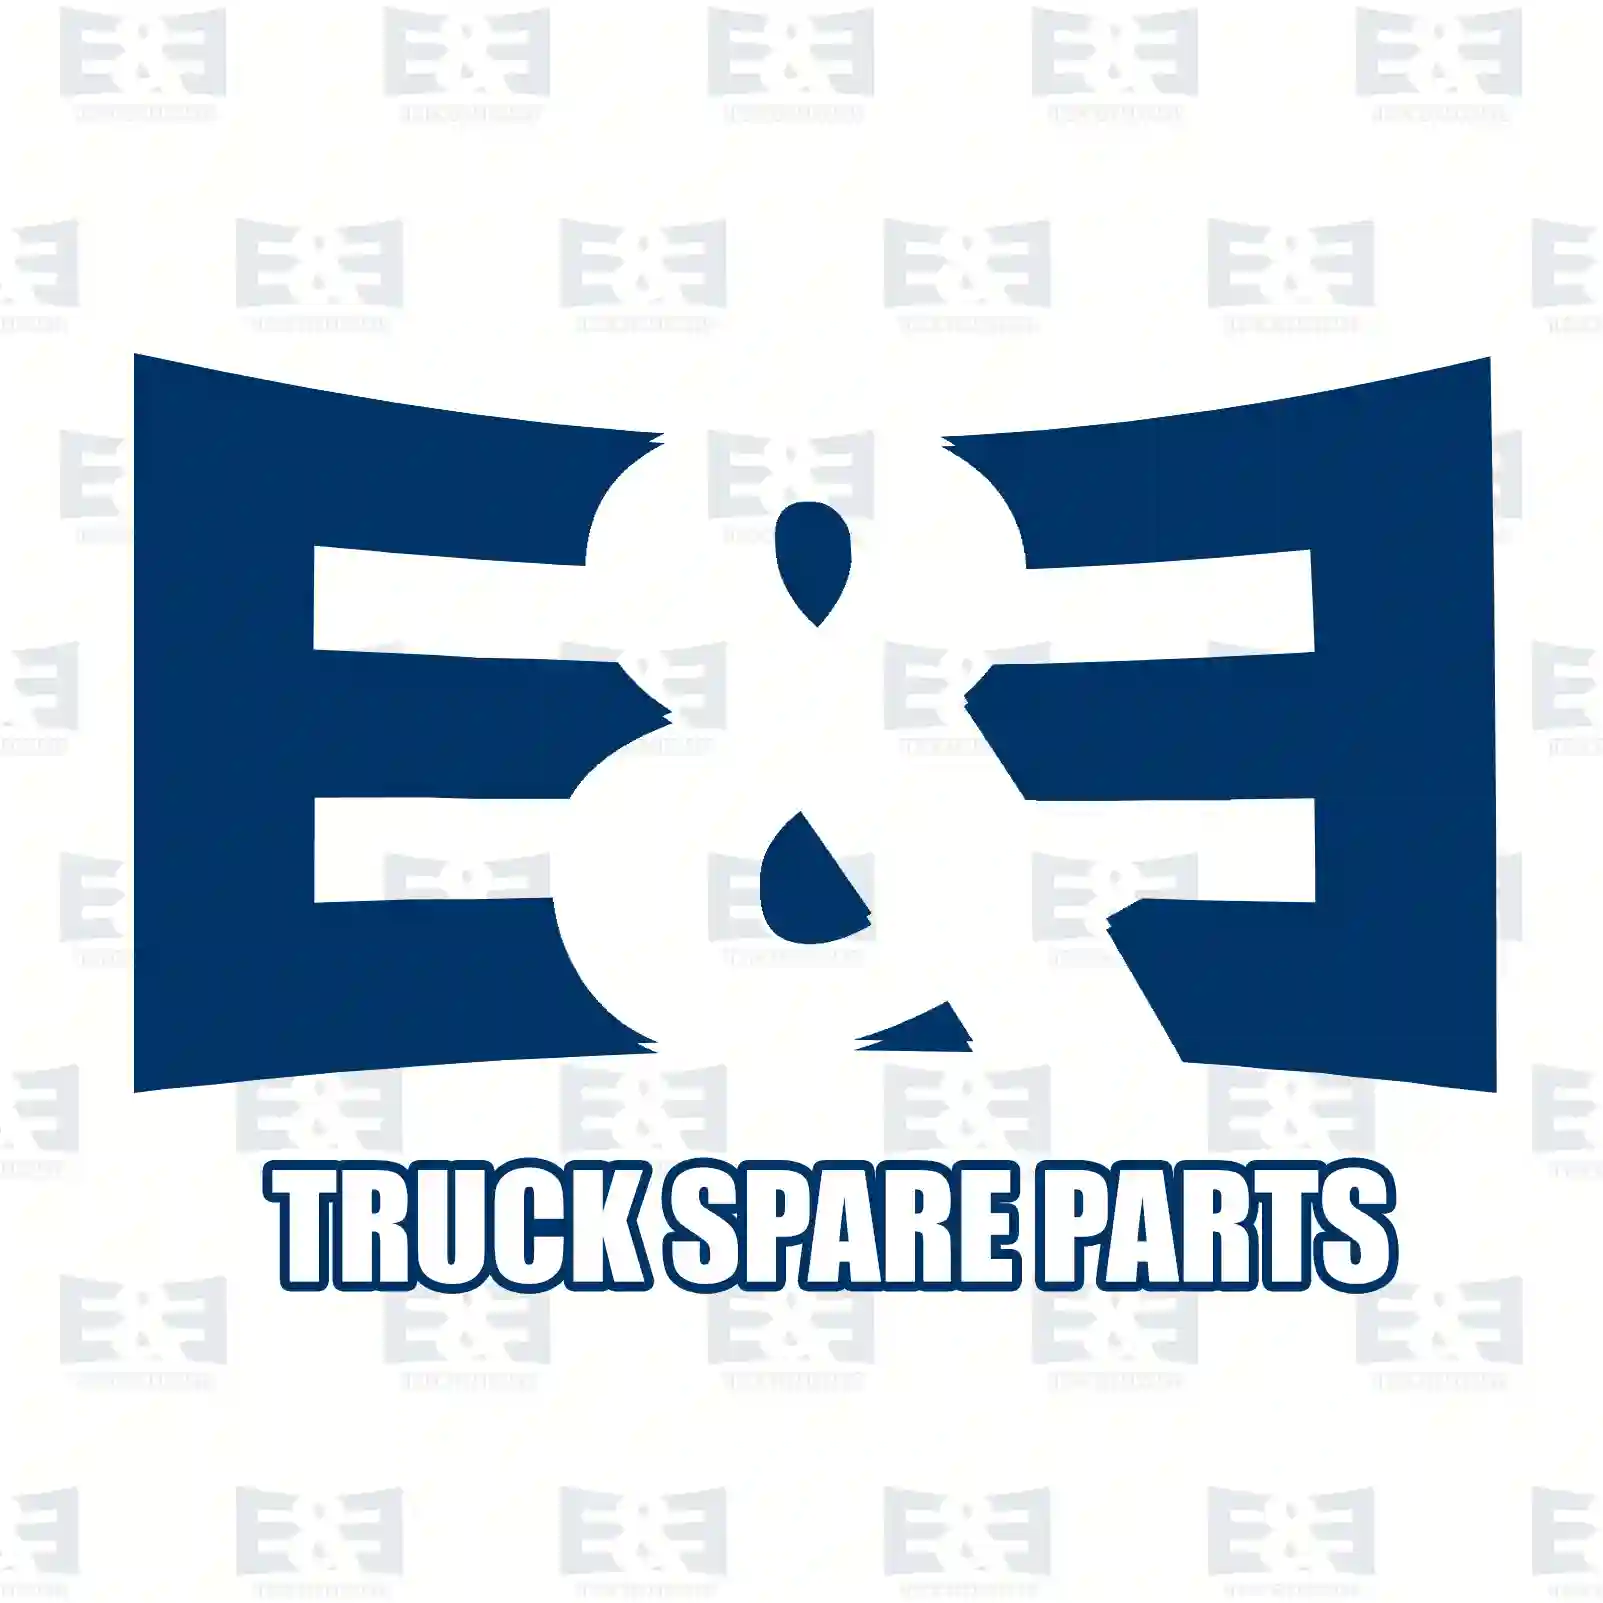  Solenoid valve, level control || E&E Truck Spare Parts | Truck Spare Parts, Auotomotive Spare Parts